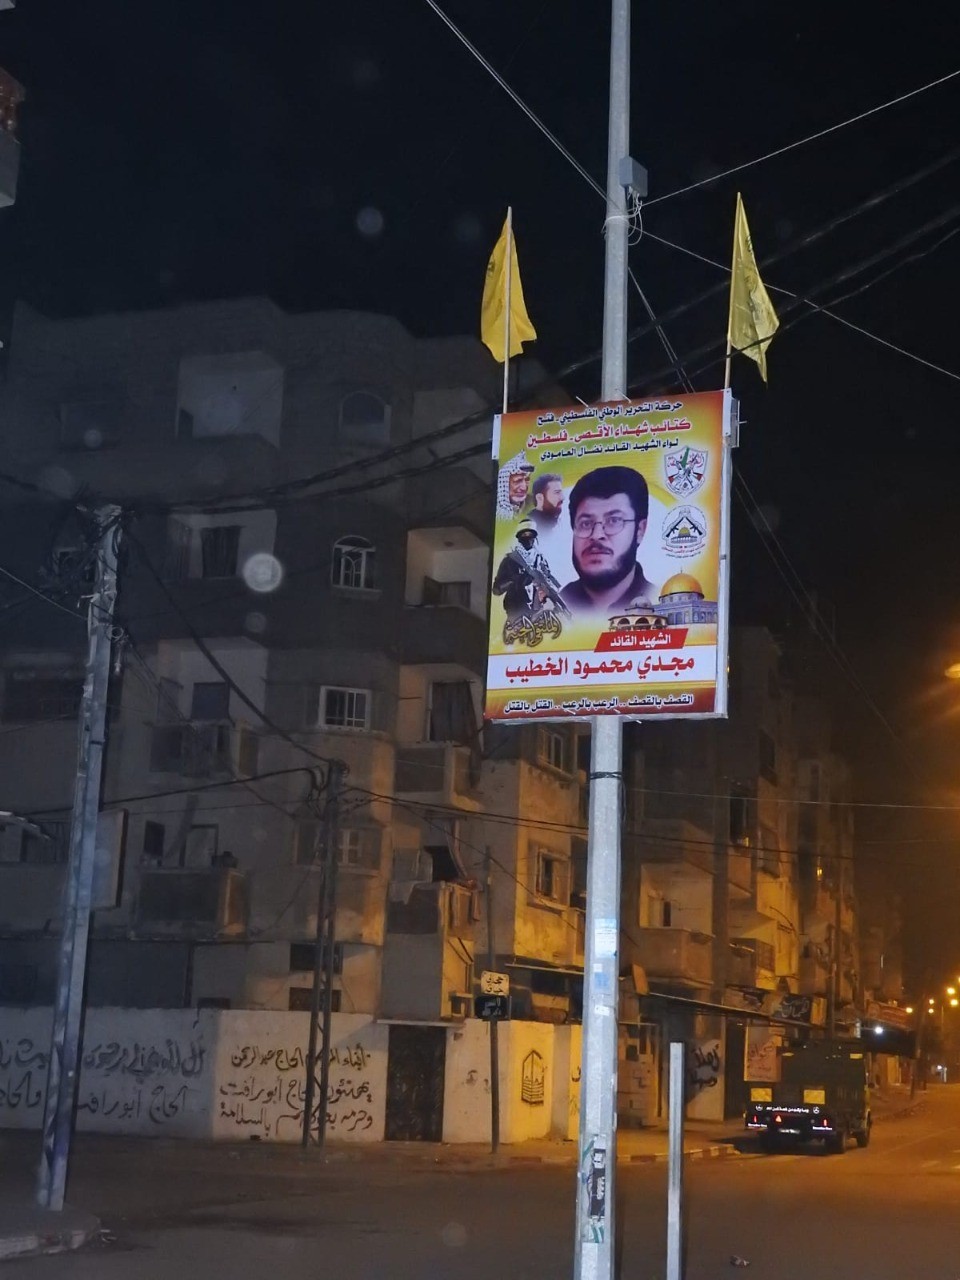 شاهد: جناح "فتح" العسكري يُدشن لافتات بصور شهداءه في شوارع غزة